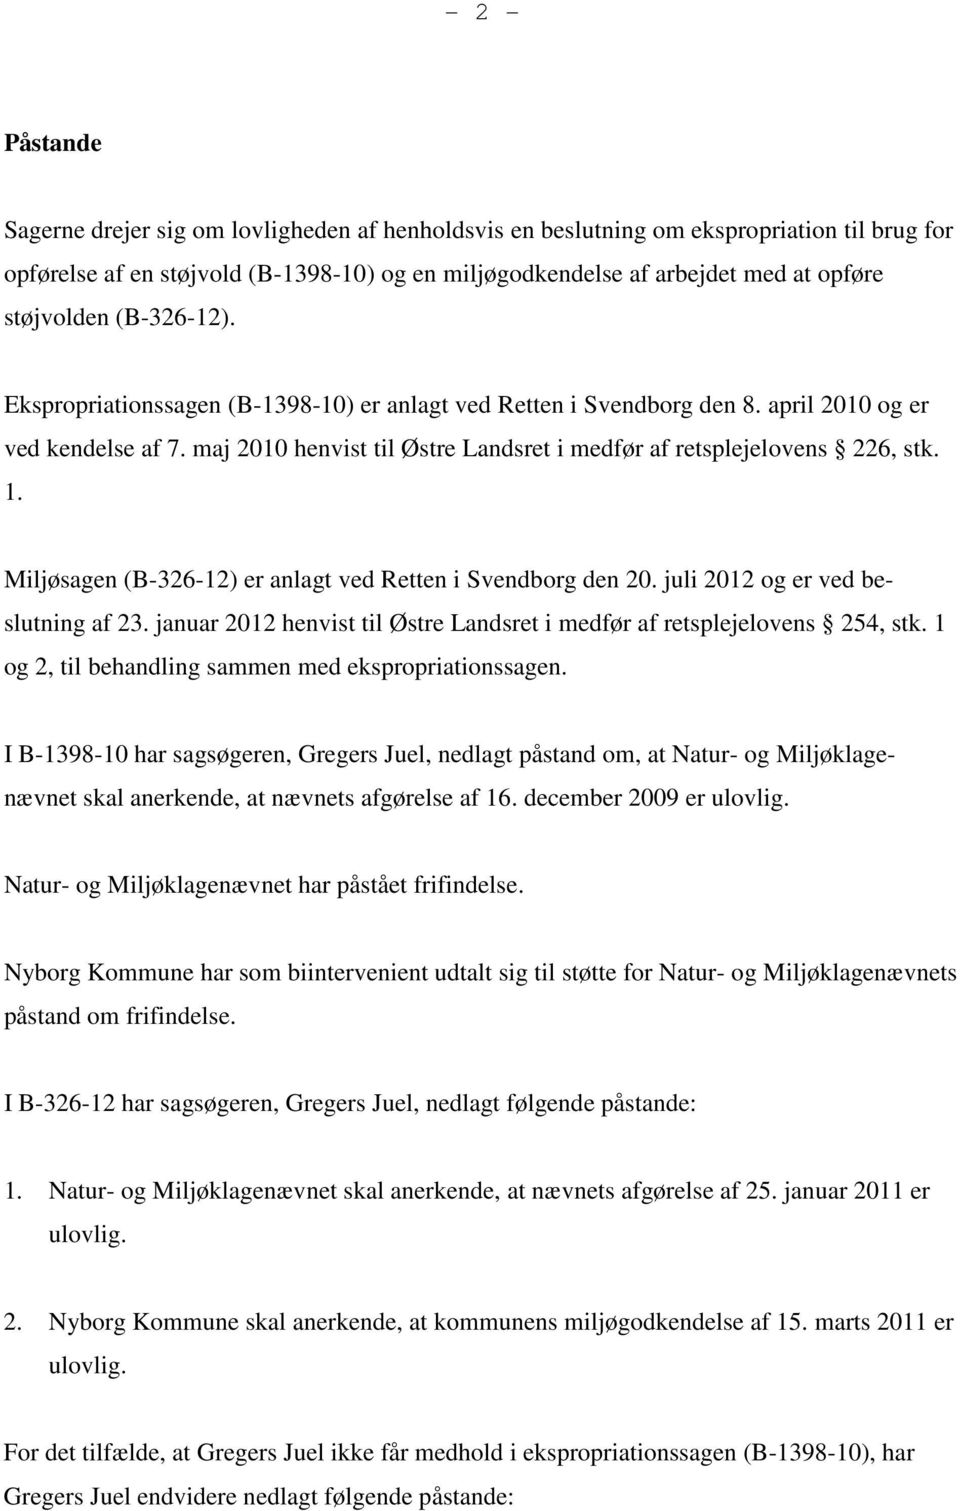 maj 2010 henvist til Østre Landsret i medfør af retsplejelovens 226, stk. 1. Miljøsagen (B-326-12) er anlagt ved Retten i Svendborg den 20. juli 2012 og er ved beslutning af 23.